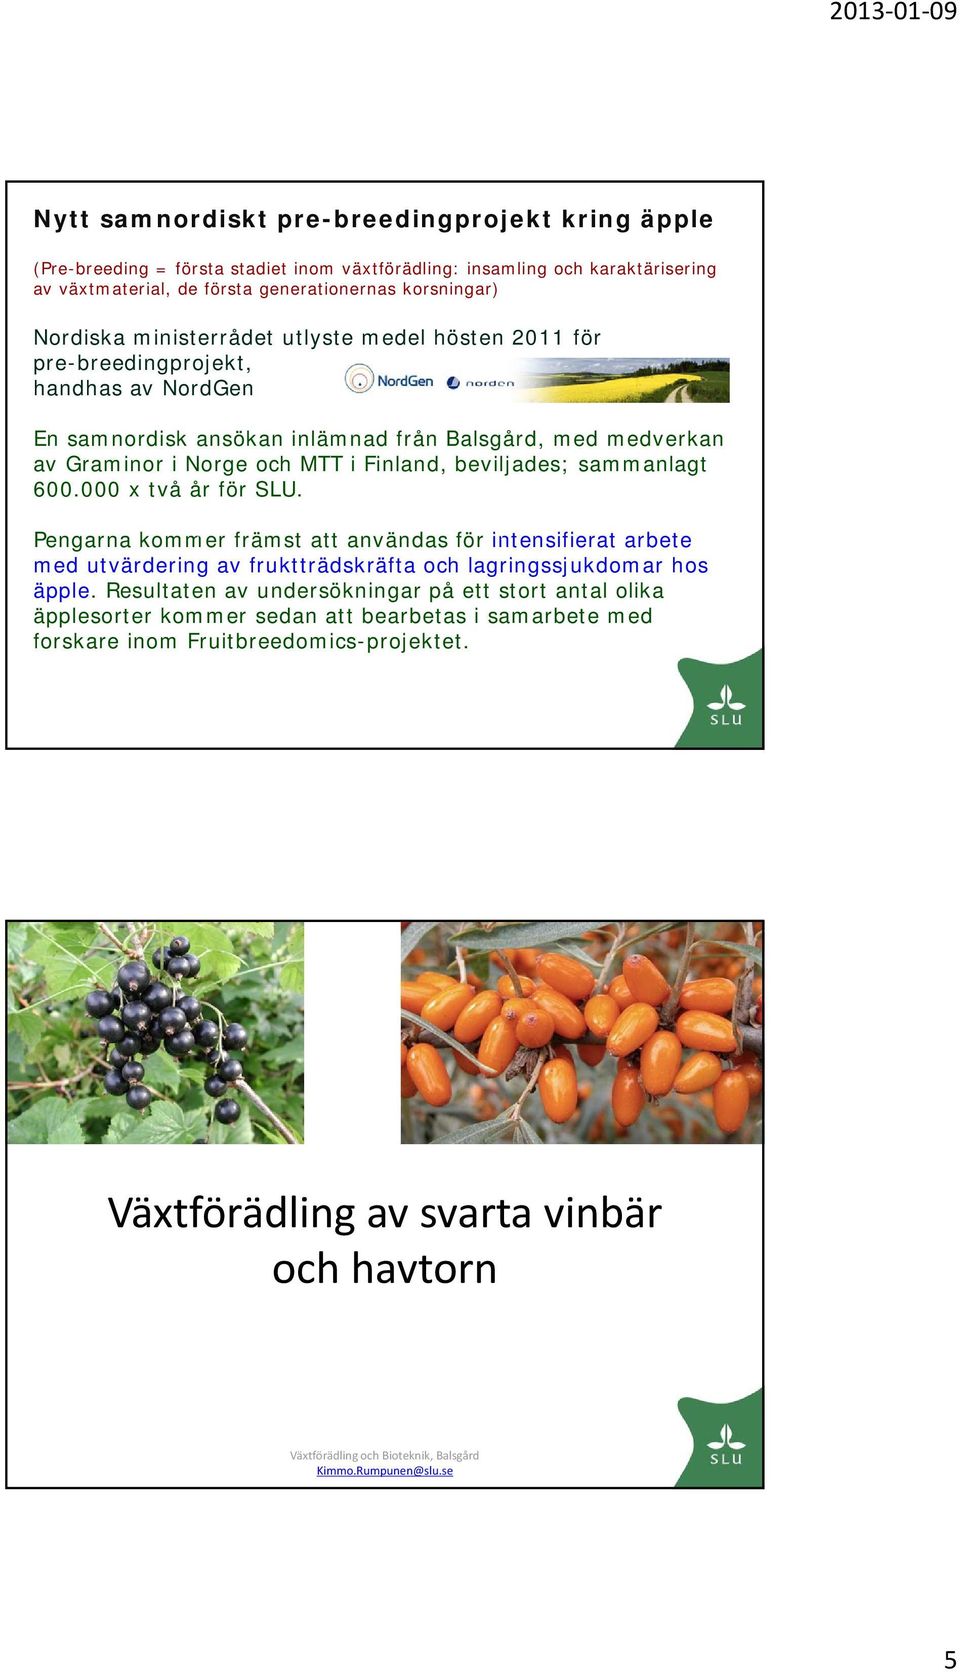 Finland, beviljades; sammanlagt 600.000 x två år för SLU. Pengarna kommer främst att användas för intensifierat arbete med utvärdering av fruktträdskräfta och lagringssjukdomar hos äpple.